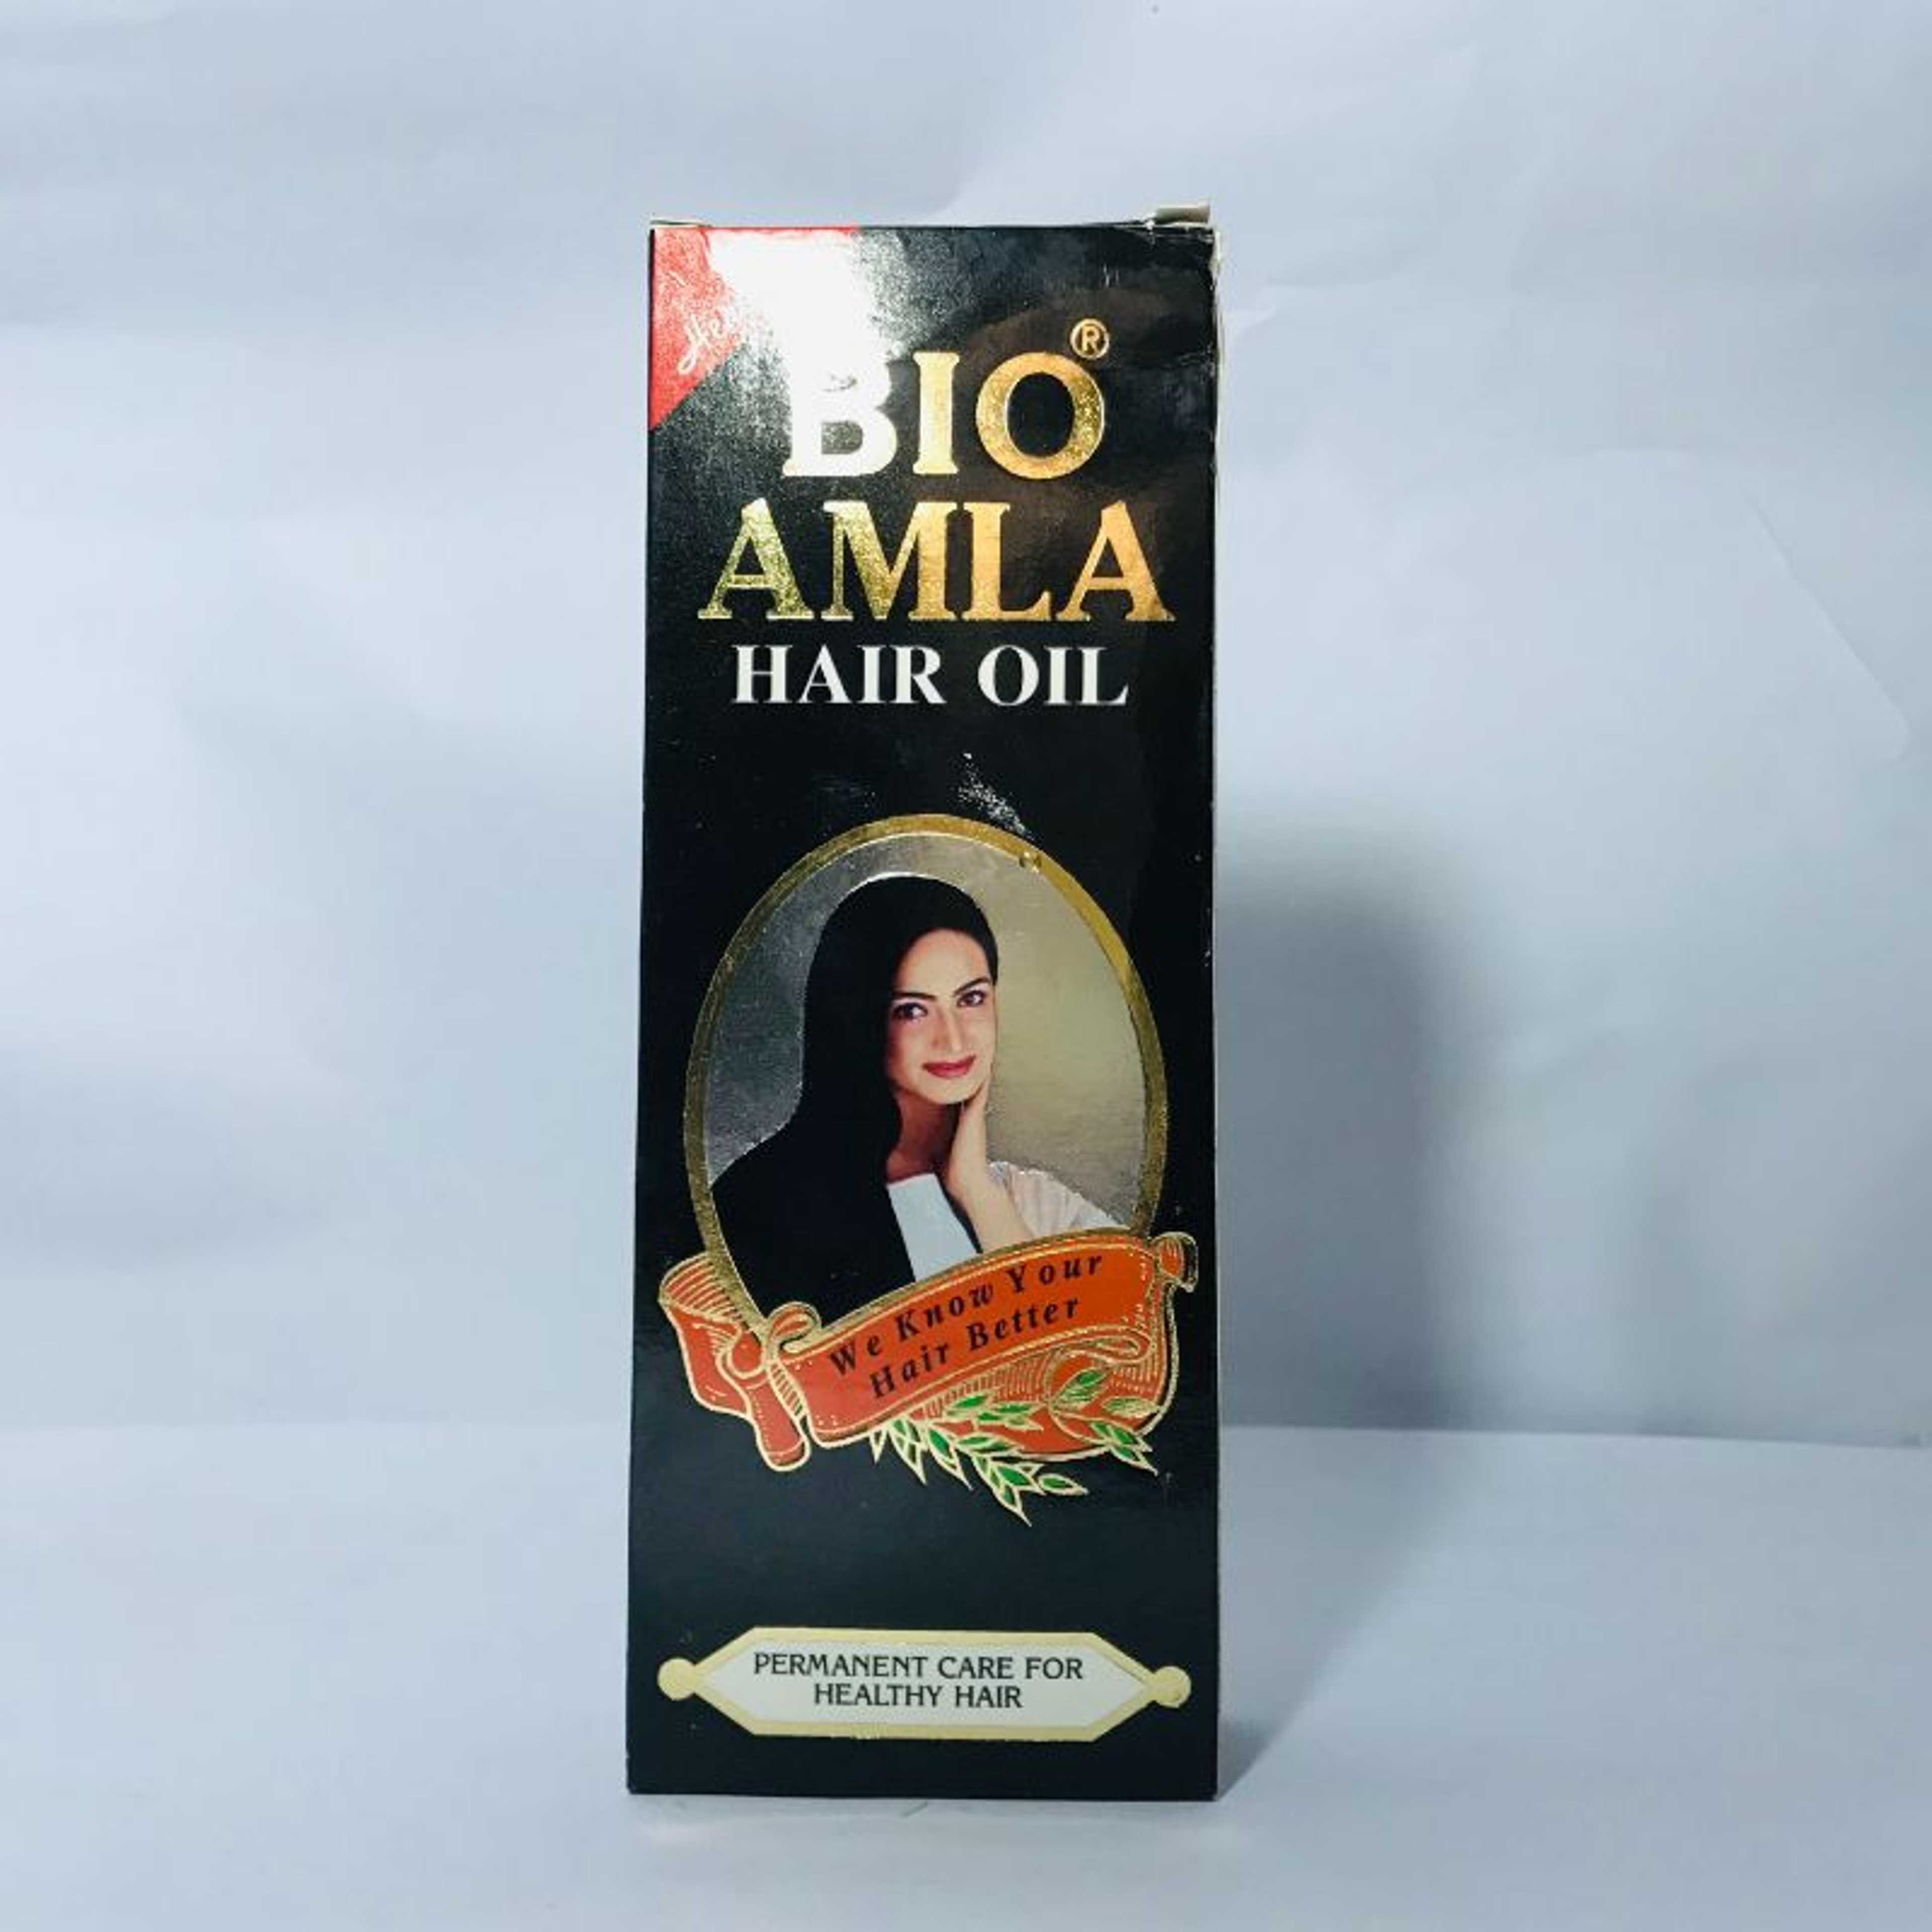 Deep moisture & bio amla hair oil serum argan oil for hair